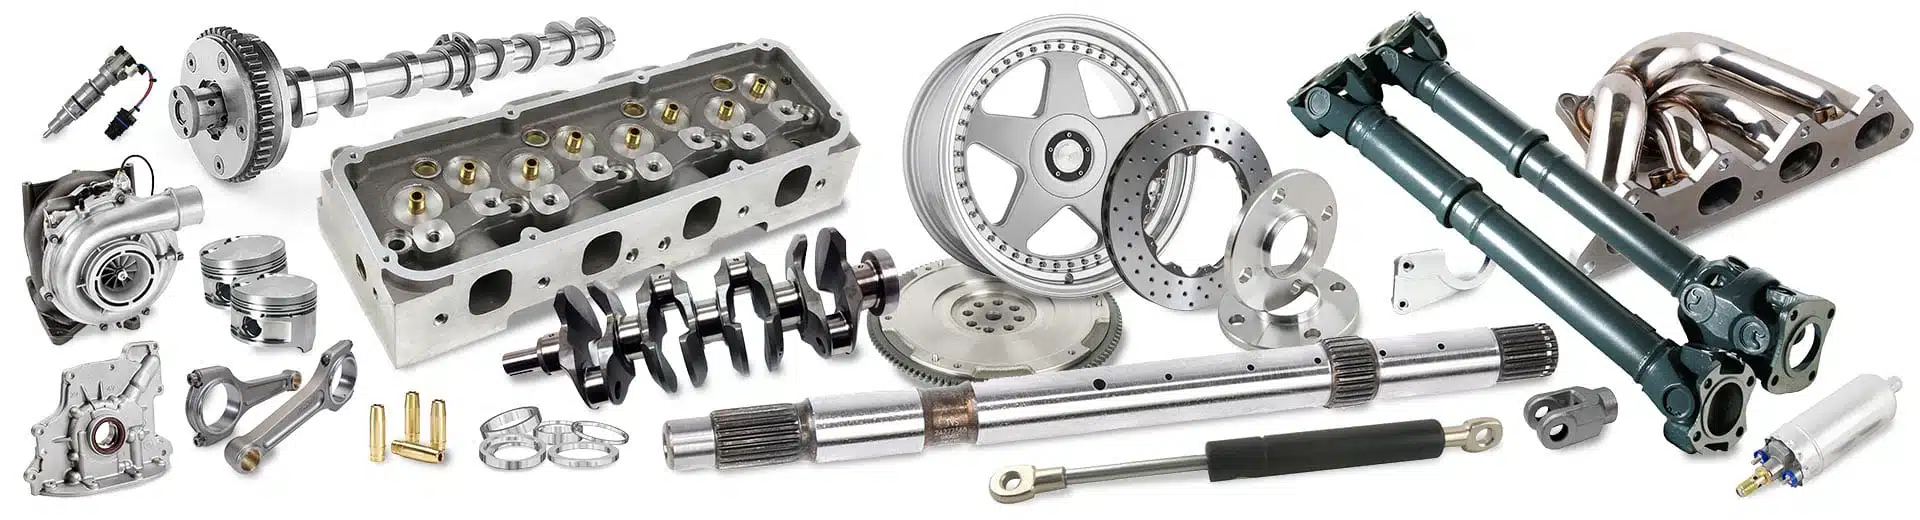 automotive components montage